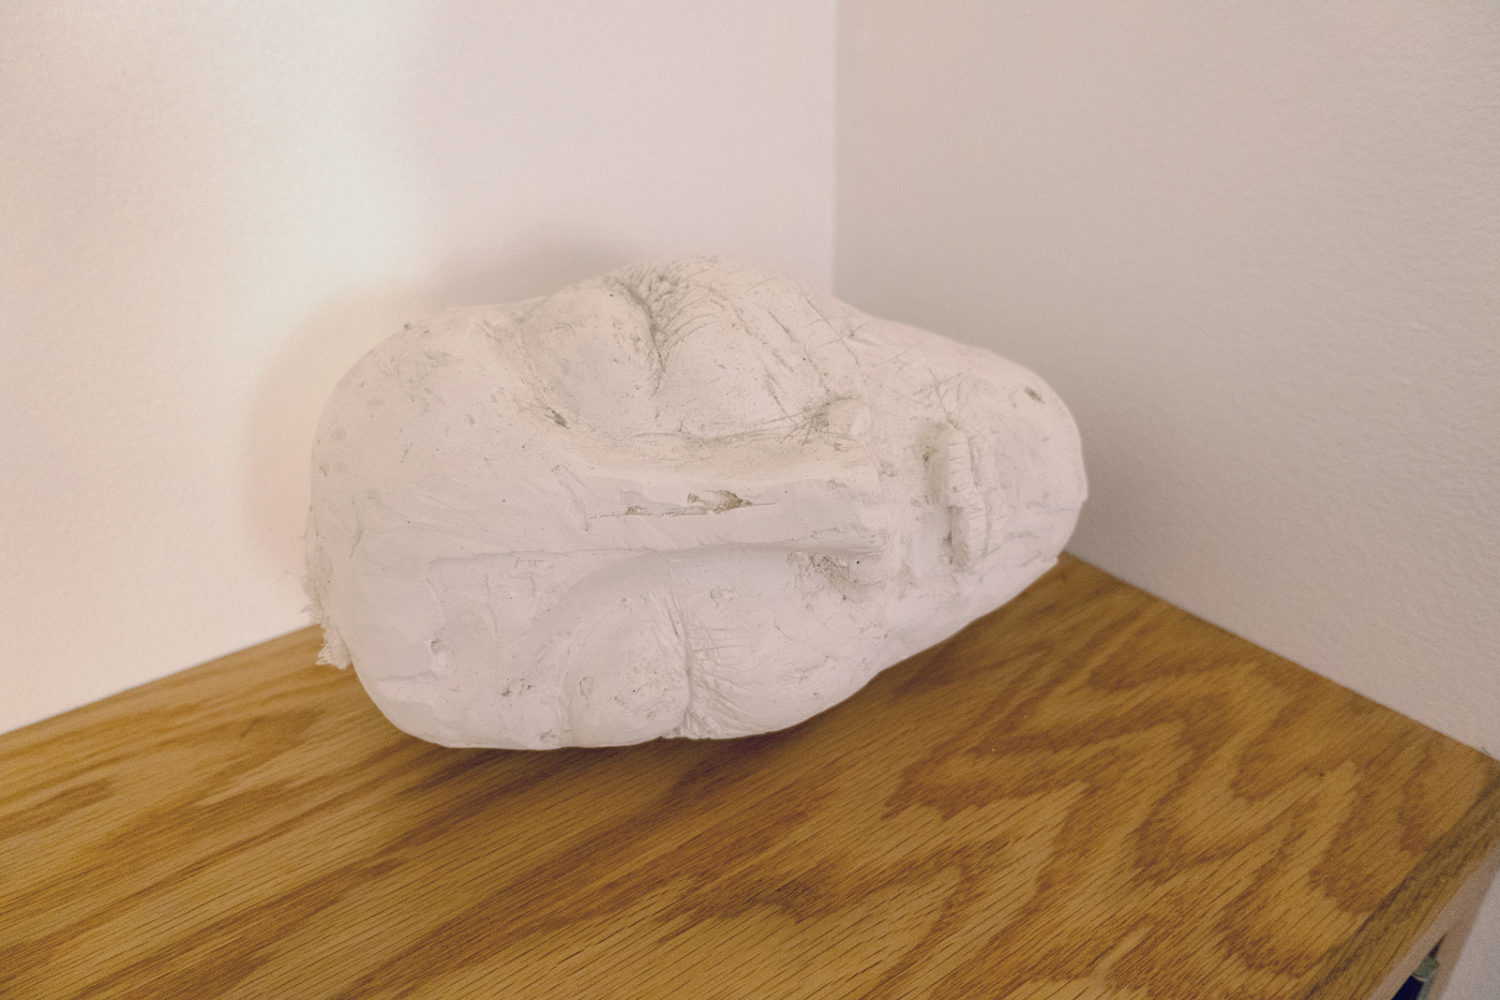 Anne Havens sculpture from "Sleeping Around" series 2007